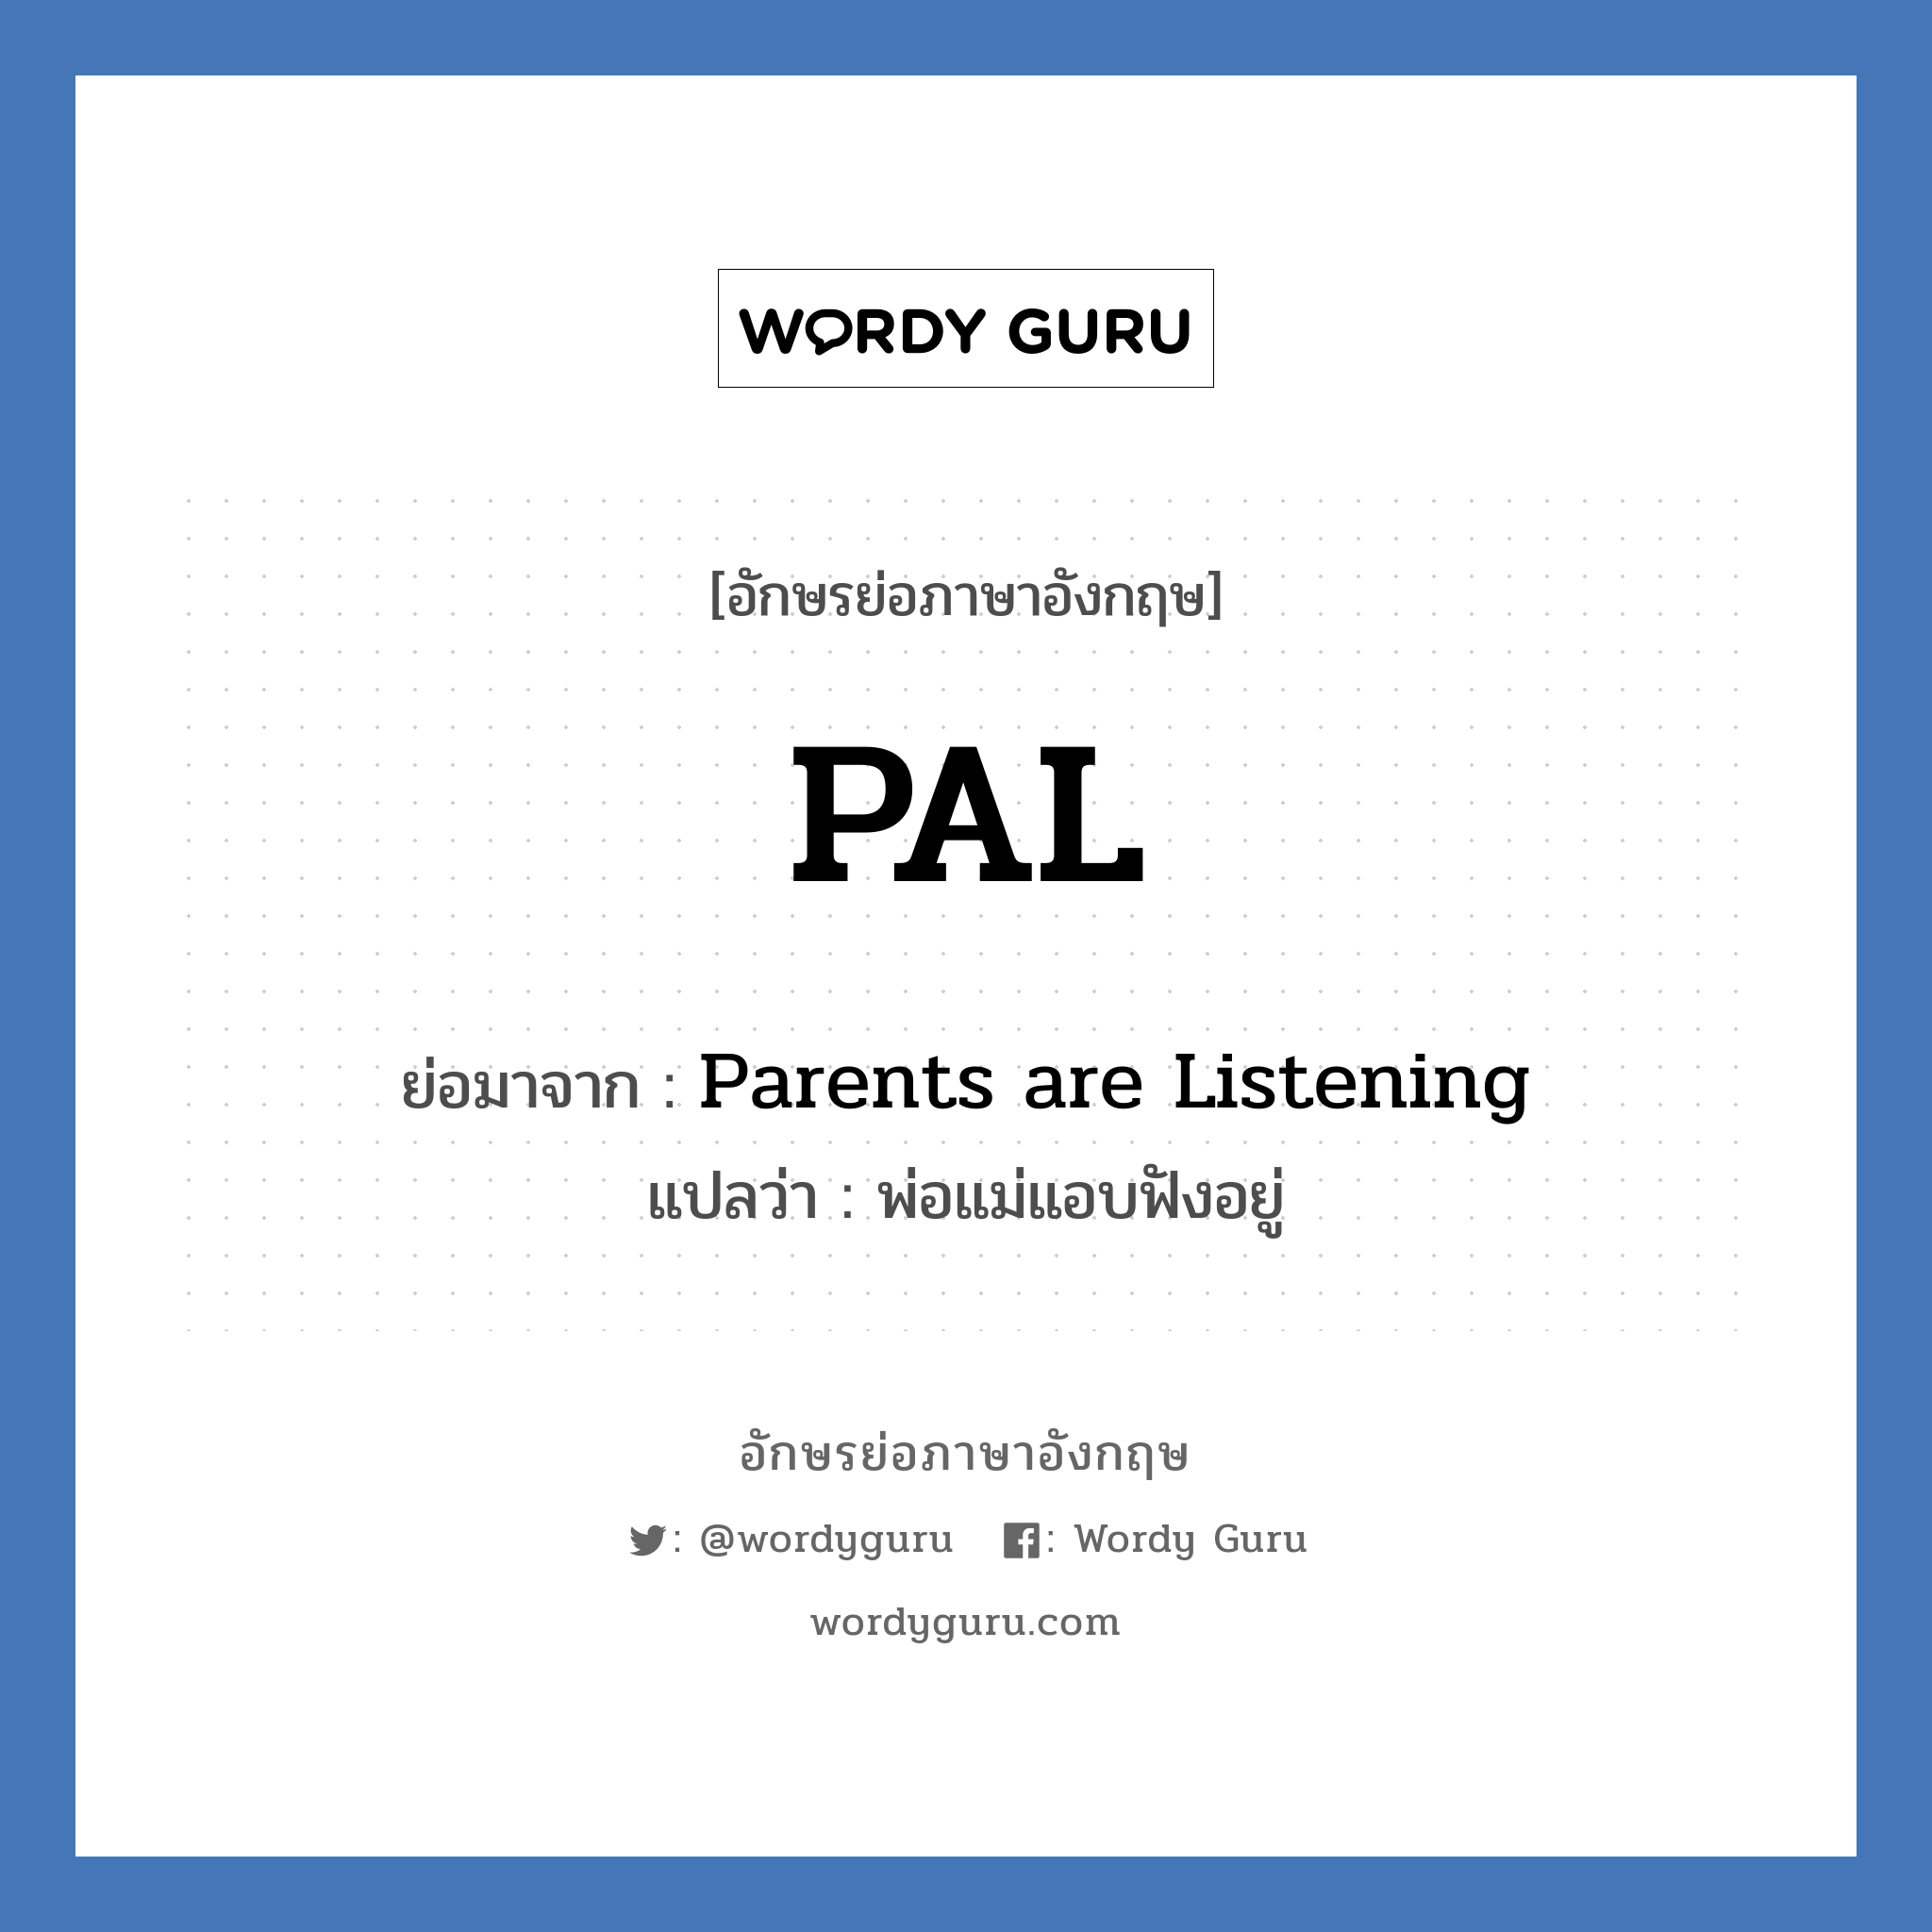 PAL ย่อมาจาก? แปลว่า?, อักษรย่อภาษาอังกฤษ PAL ย่อมาจาก Parents are Listening แปลว่า พ่อแม่แอบฟังอยู่